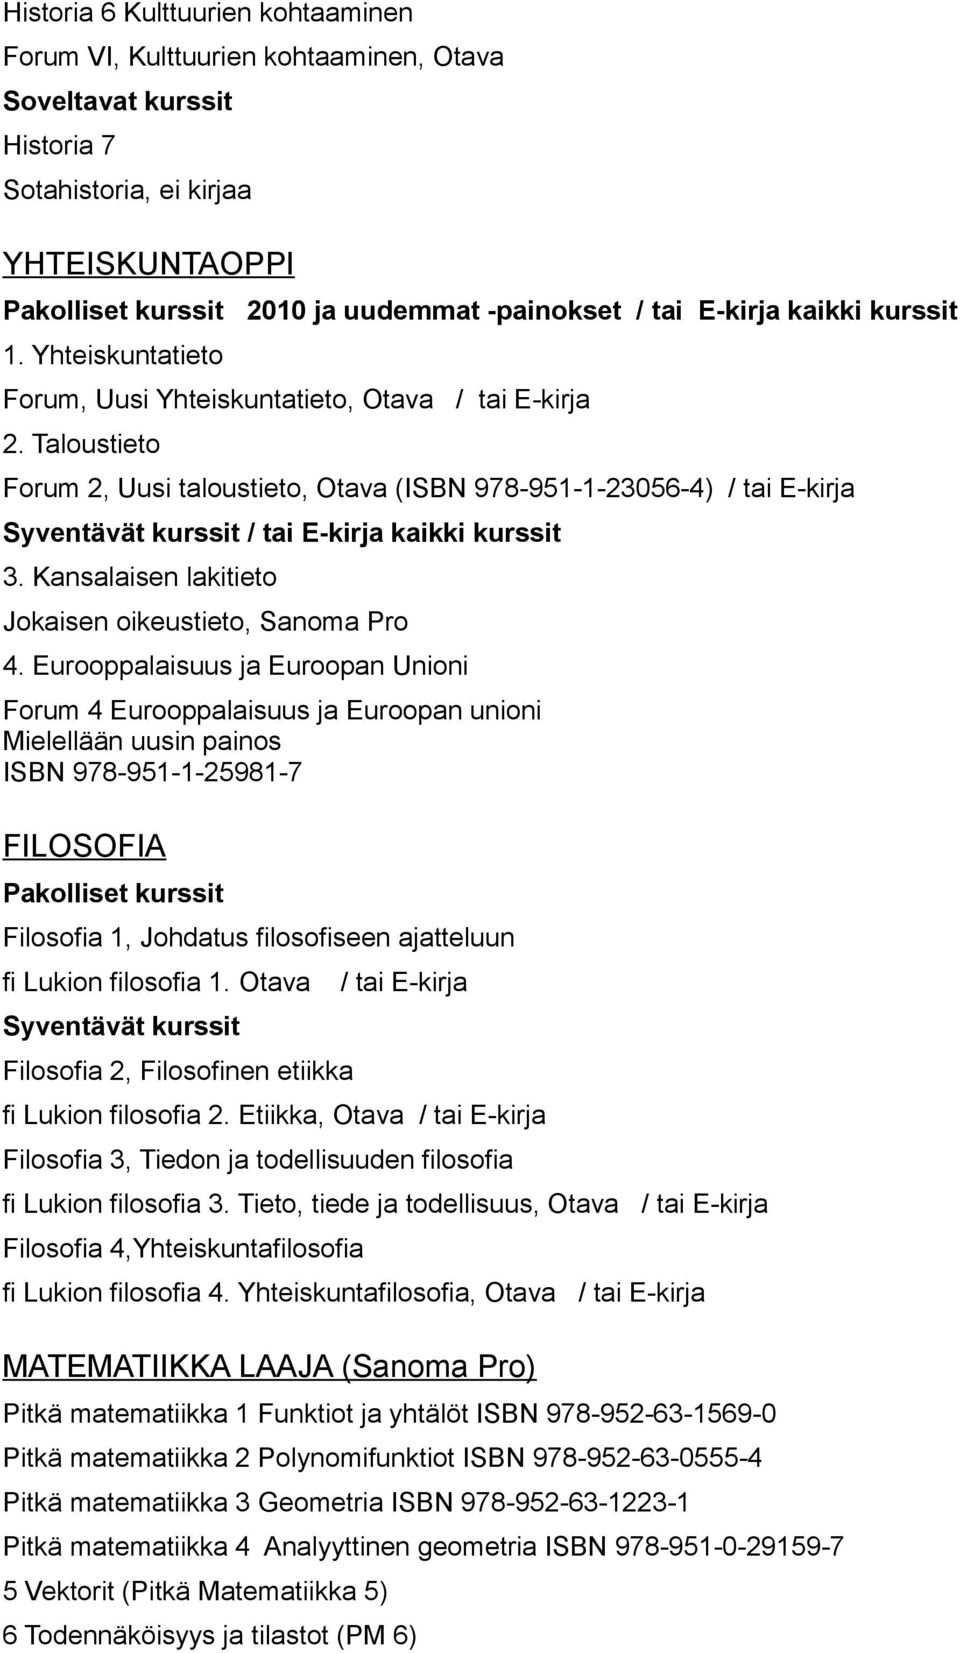 Taloustieto Forum 2, Uusi taloustieto, Otava (ISBN 978-951-1-23056-4) / tai E-kirja Syventävät kurssit / tai E-kirja kaikki kurssit 3. Kansalaisen lakitieto Jokaisen oikeustieto, Sanoma Pro 4.